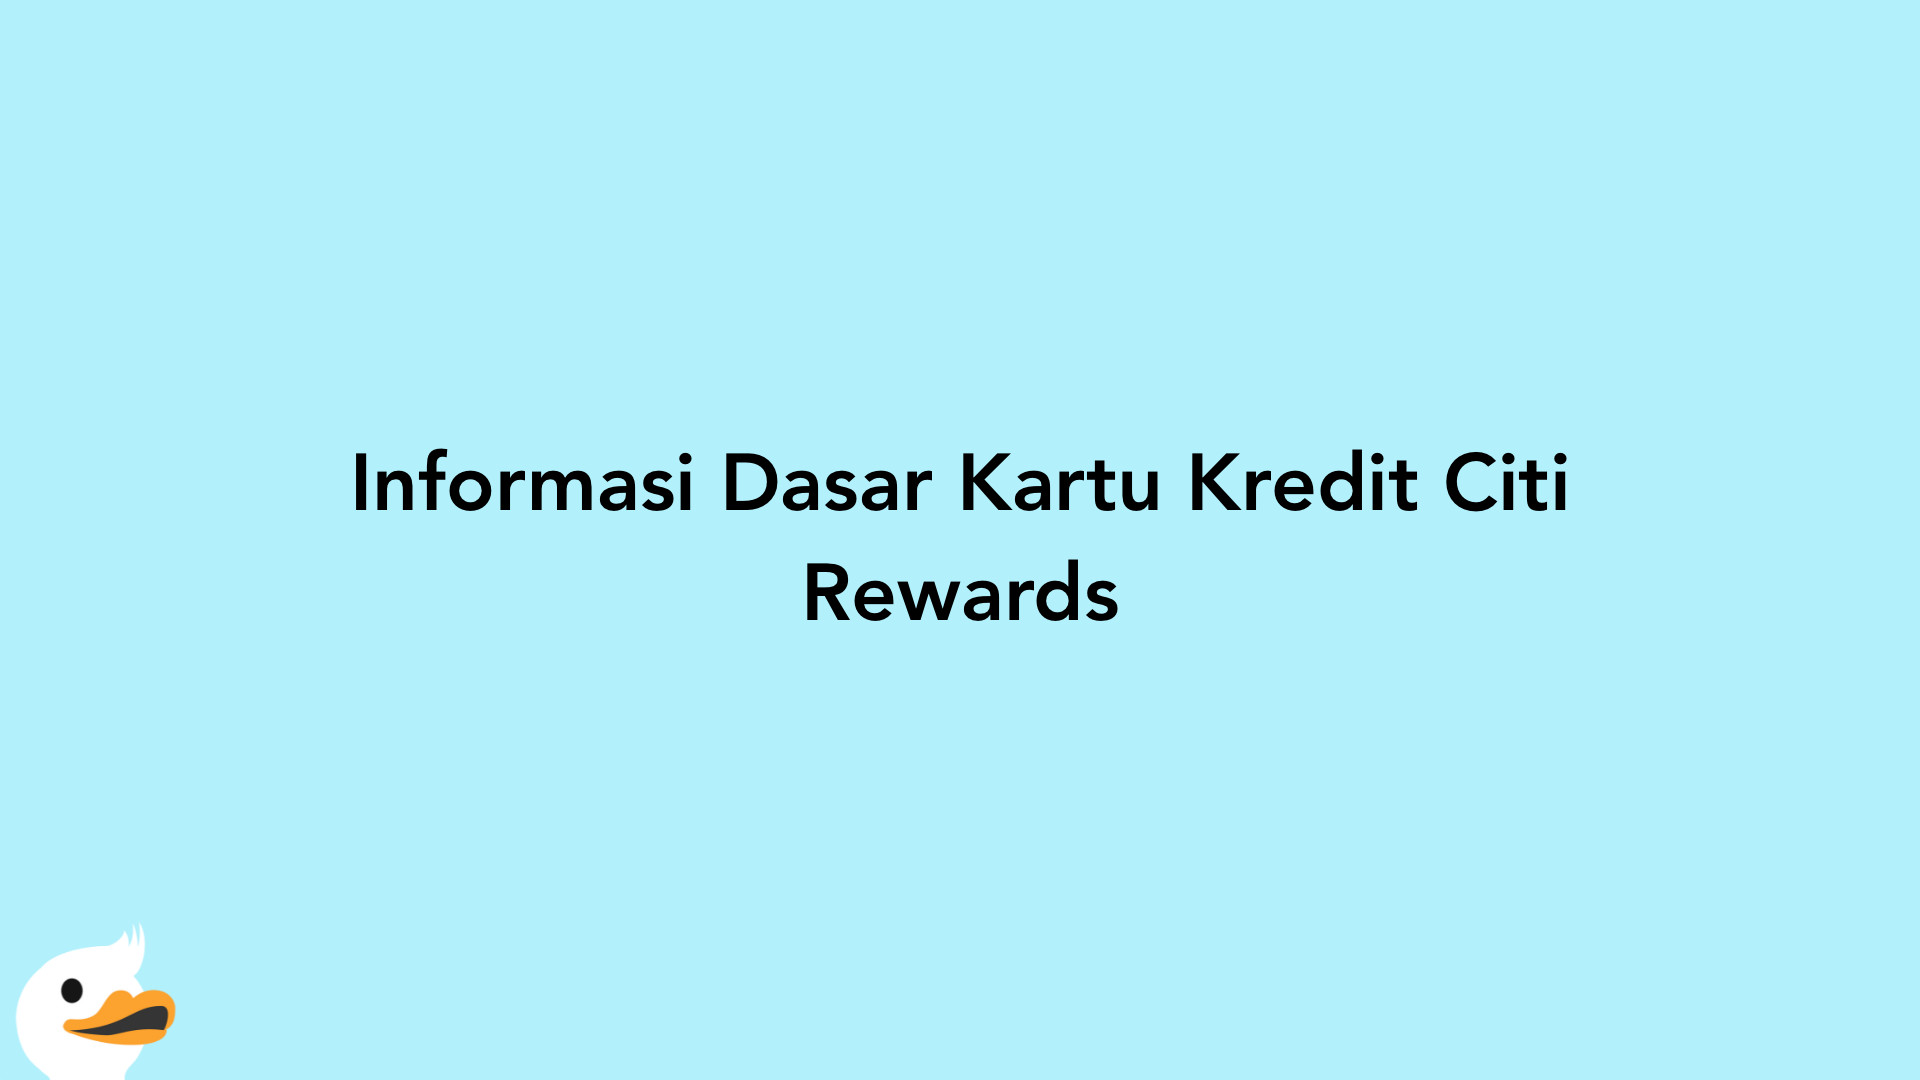 Informasi Dasar Kartu Kredit Citi Rewards